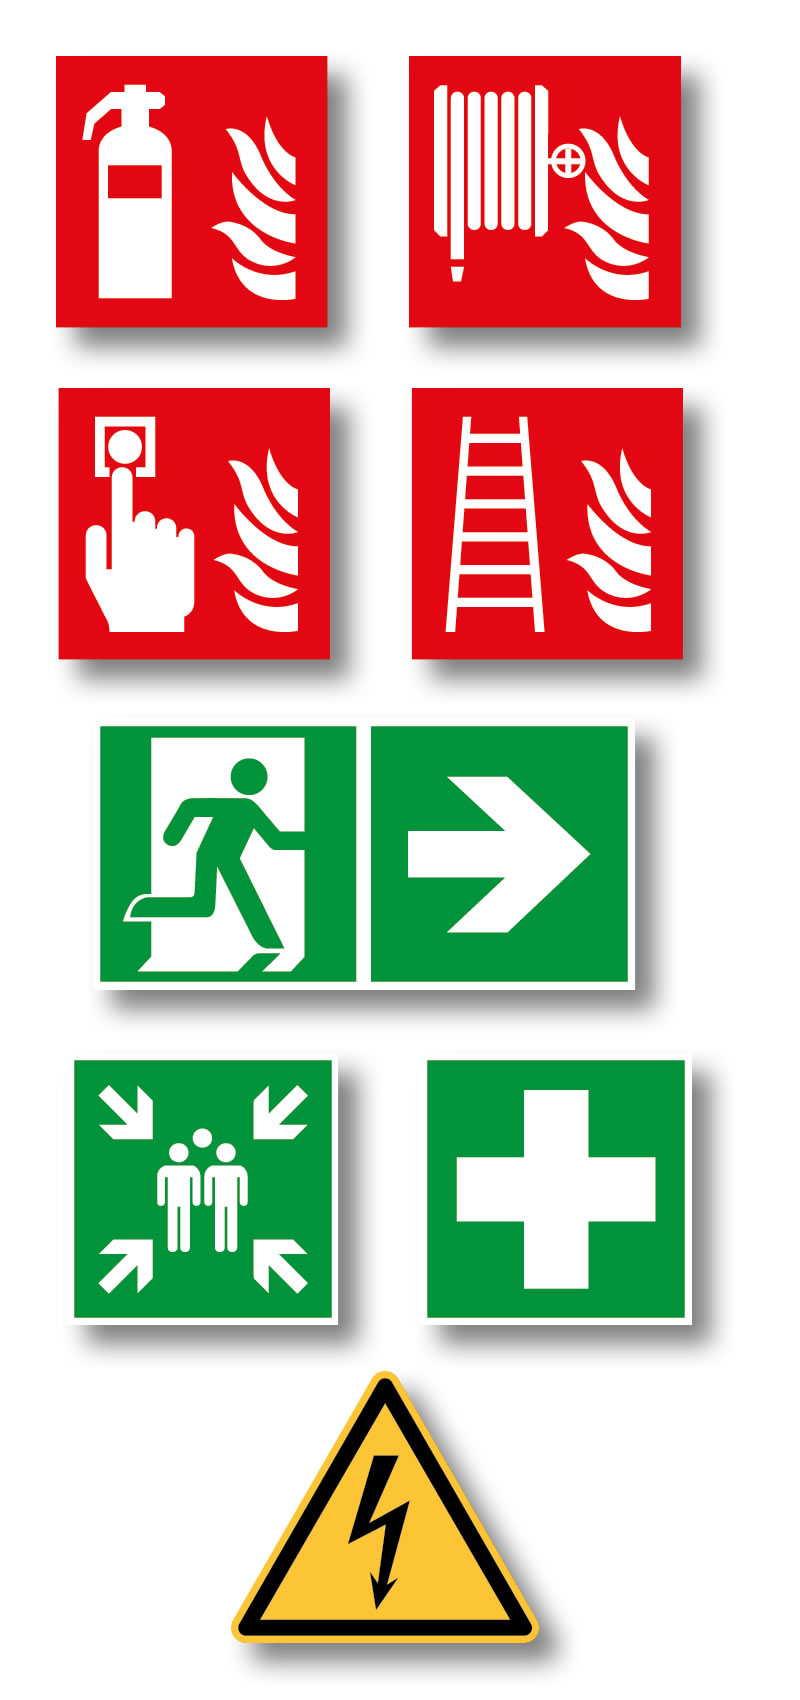 veiligheidspictogrammen: evacuatie pictogrammen, brandblusser pictogram, enz.